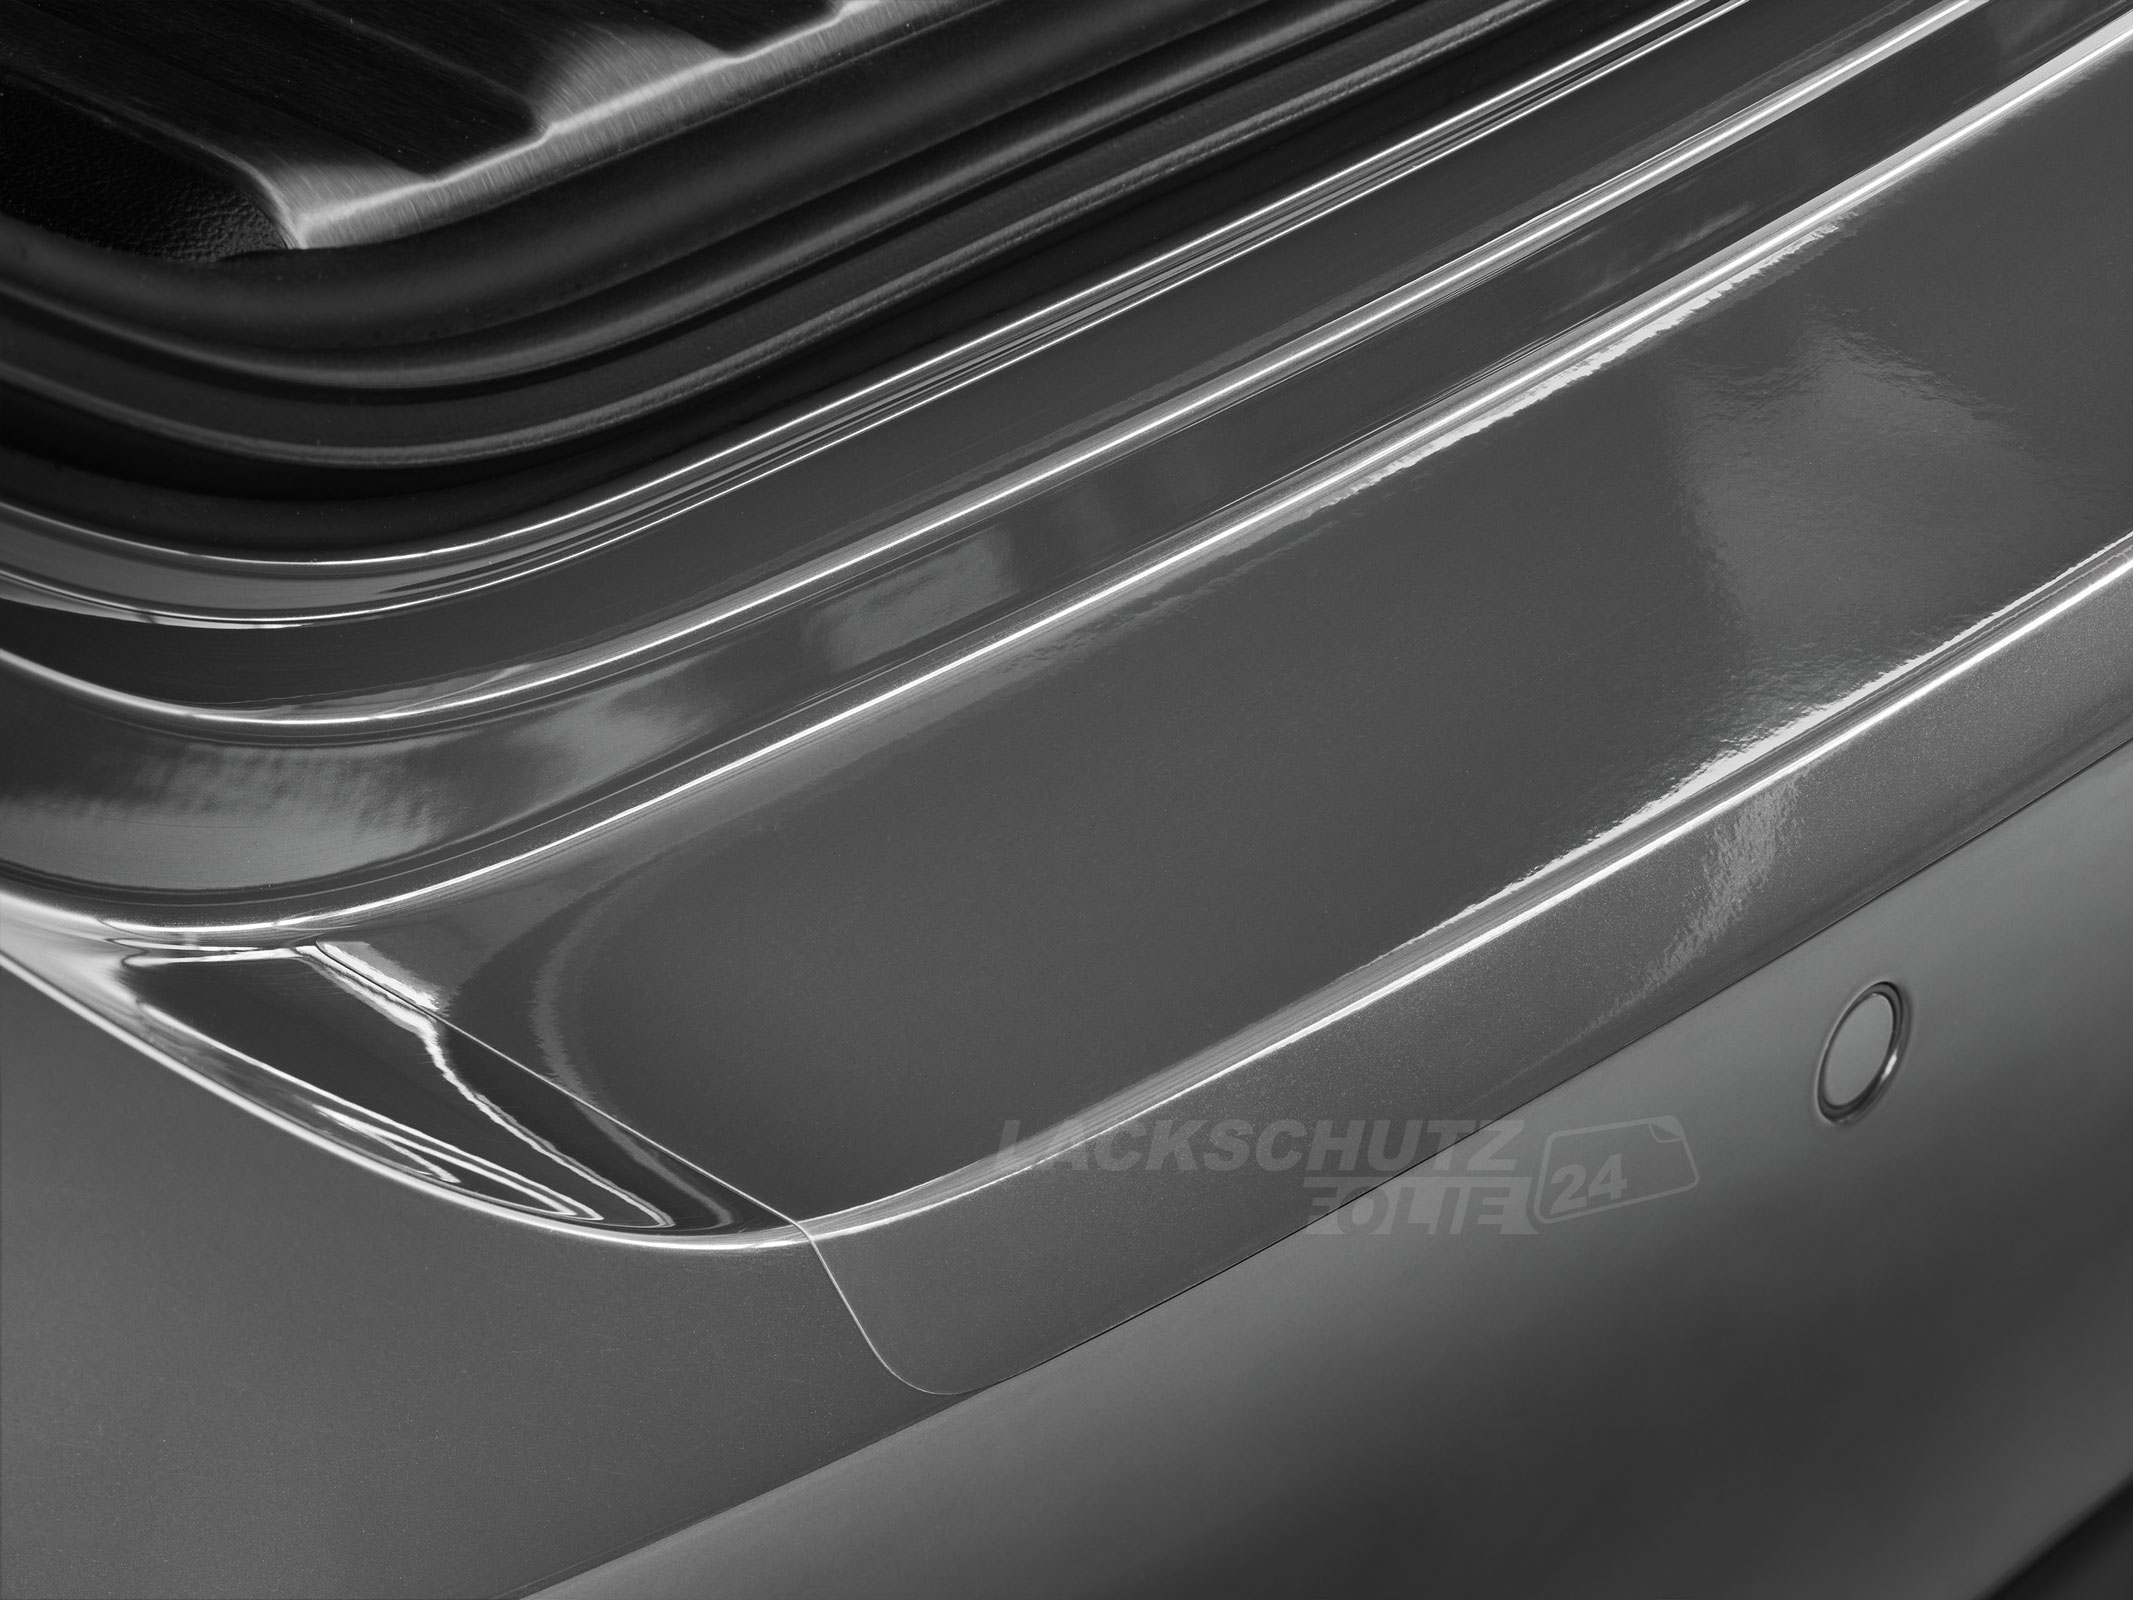 Ladekantenschutzfolie - Transparent Glatt Hochglänzend für Seat Leon Typ 1P, Facelift, BJ 2009-2012